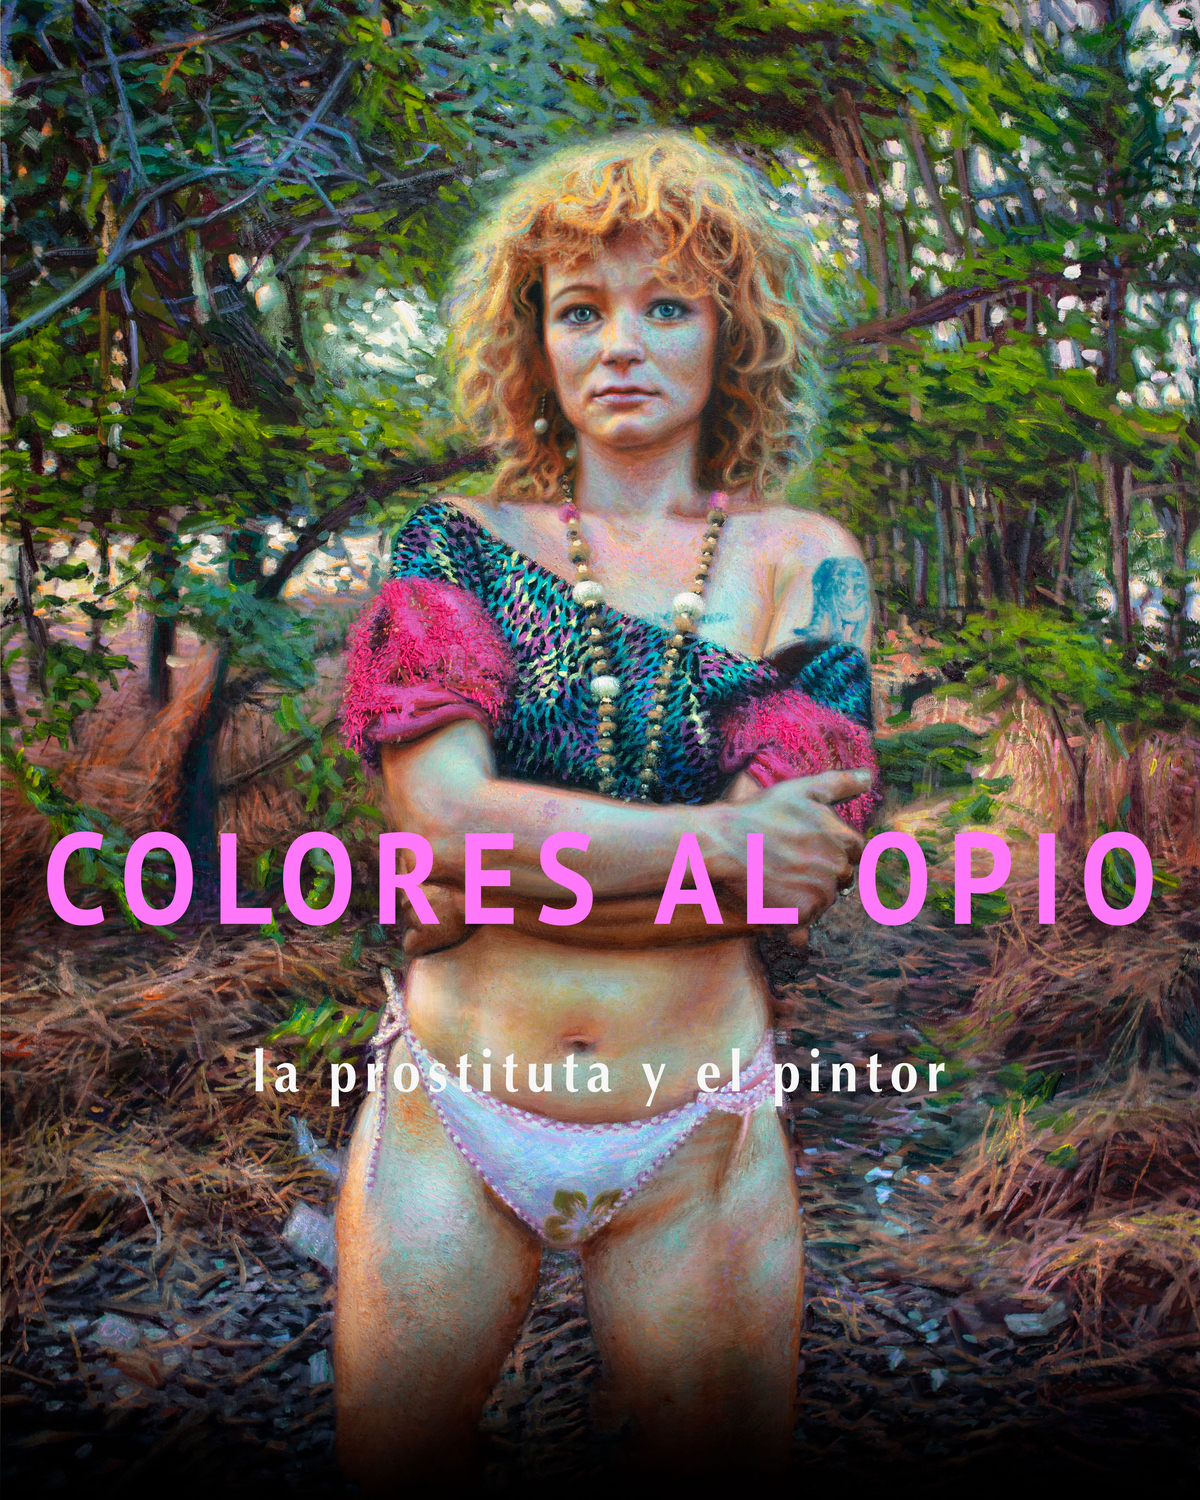 Colores al opio, la prostituta y el pintor